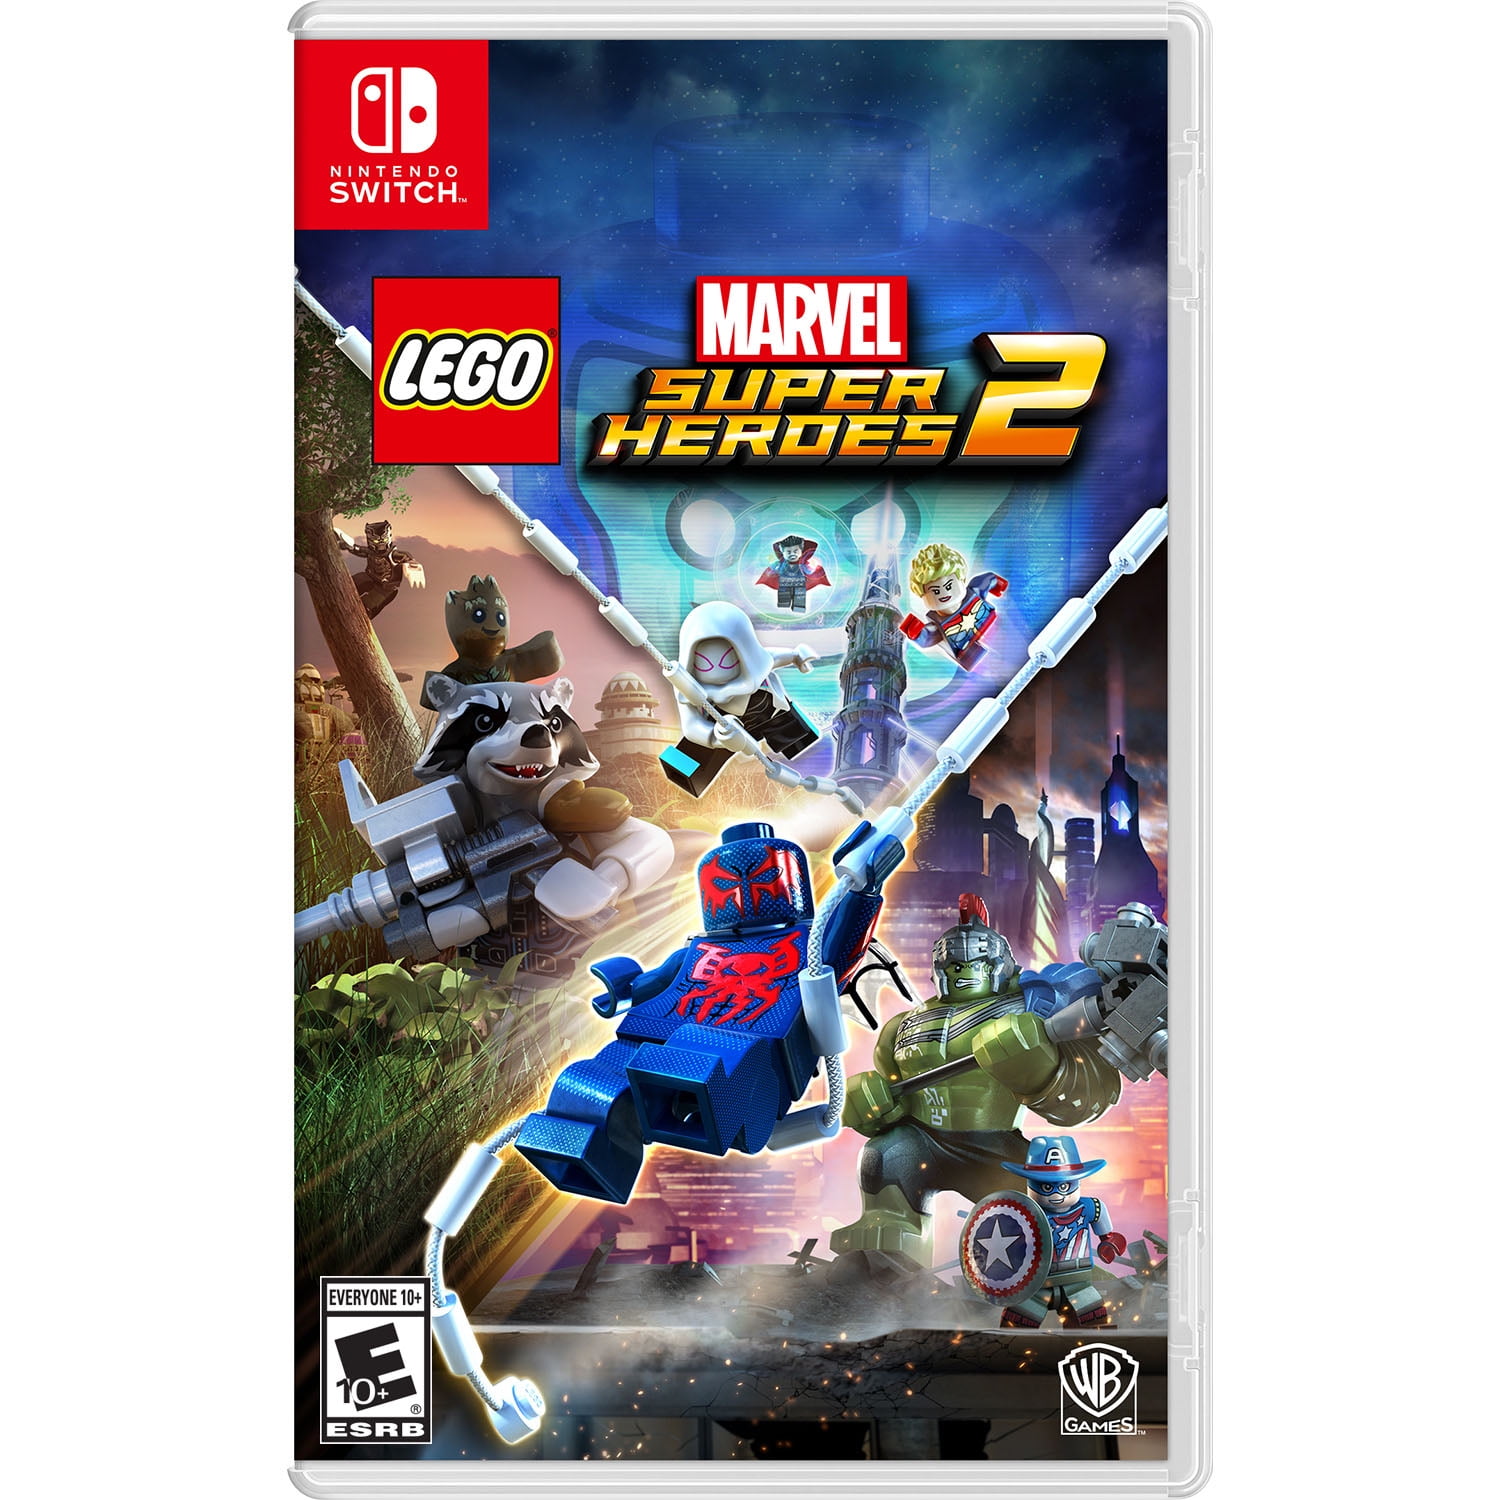 LEGO® Marvel Super Heroes 2, Marvel Universe